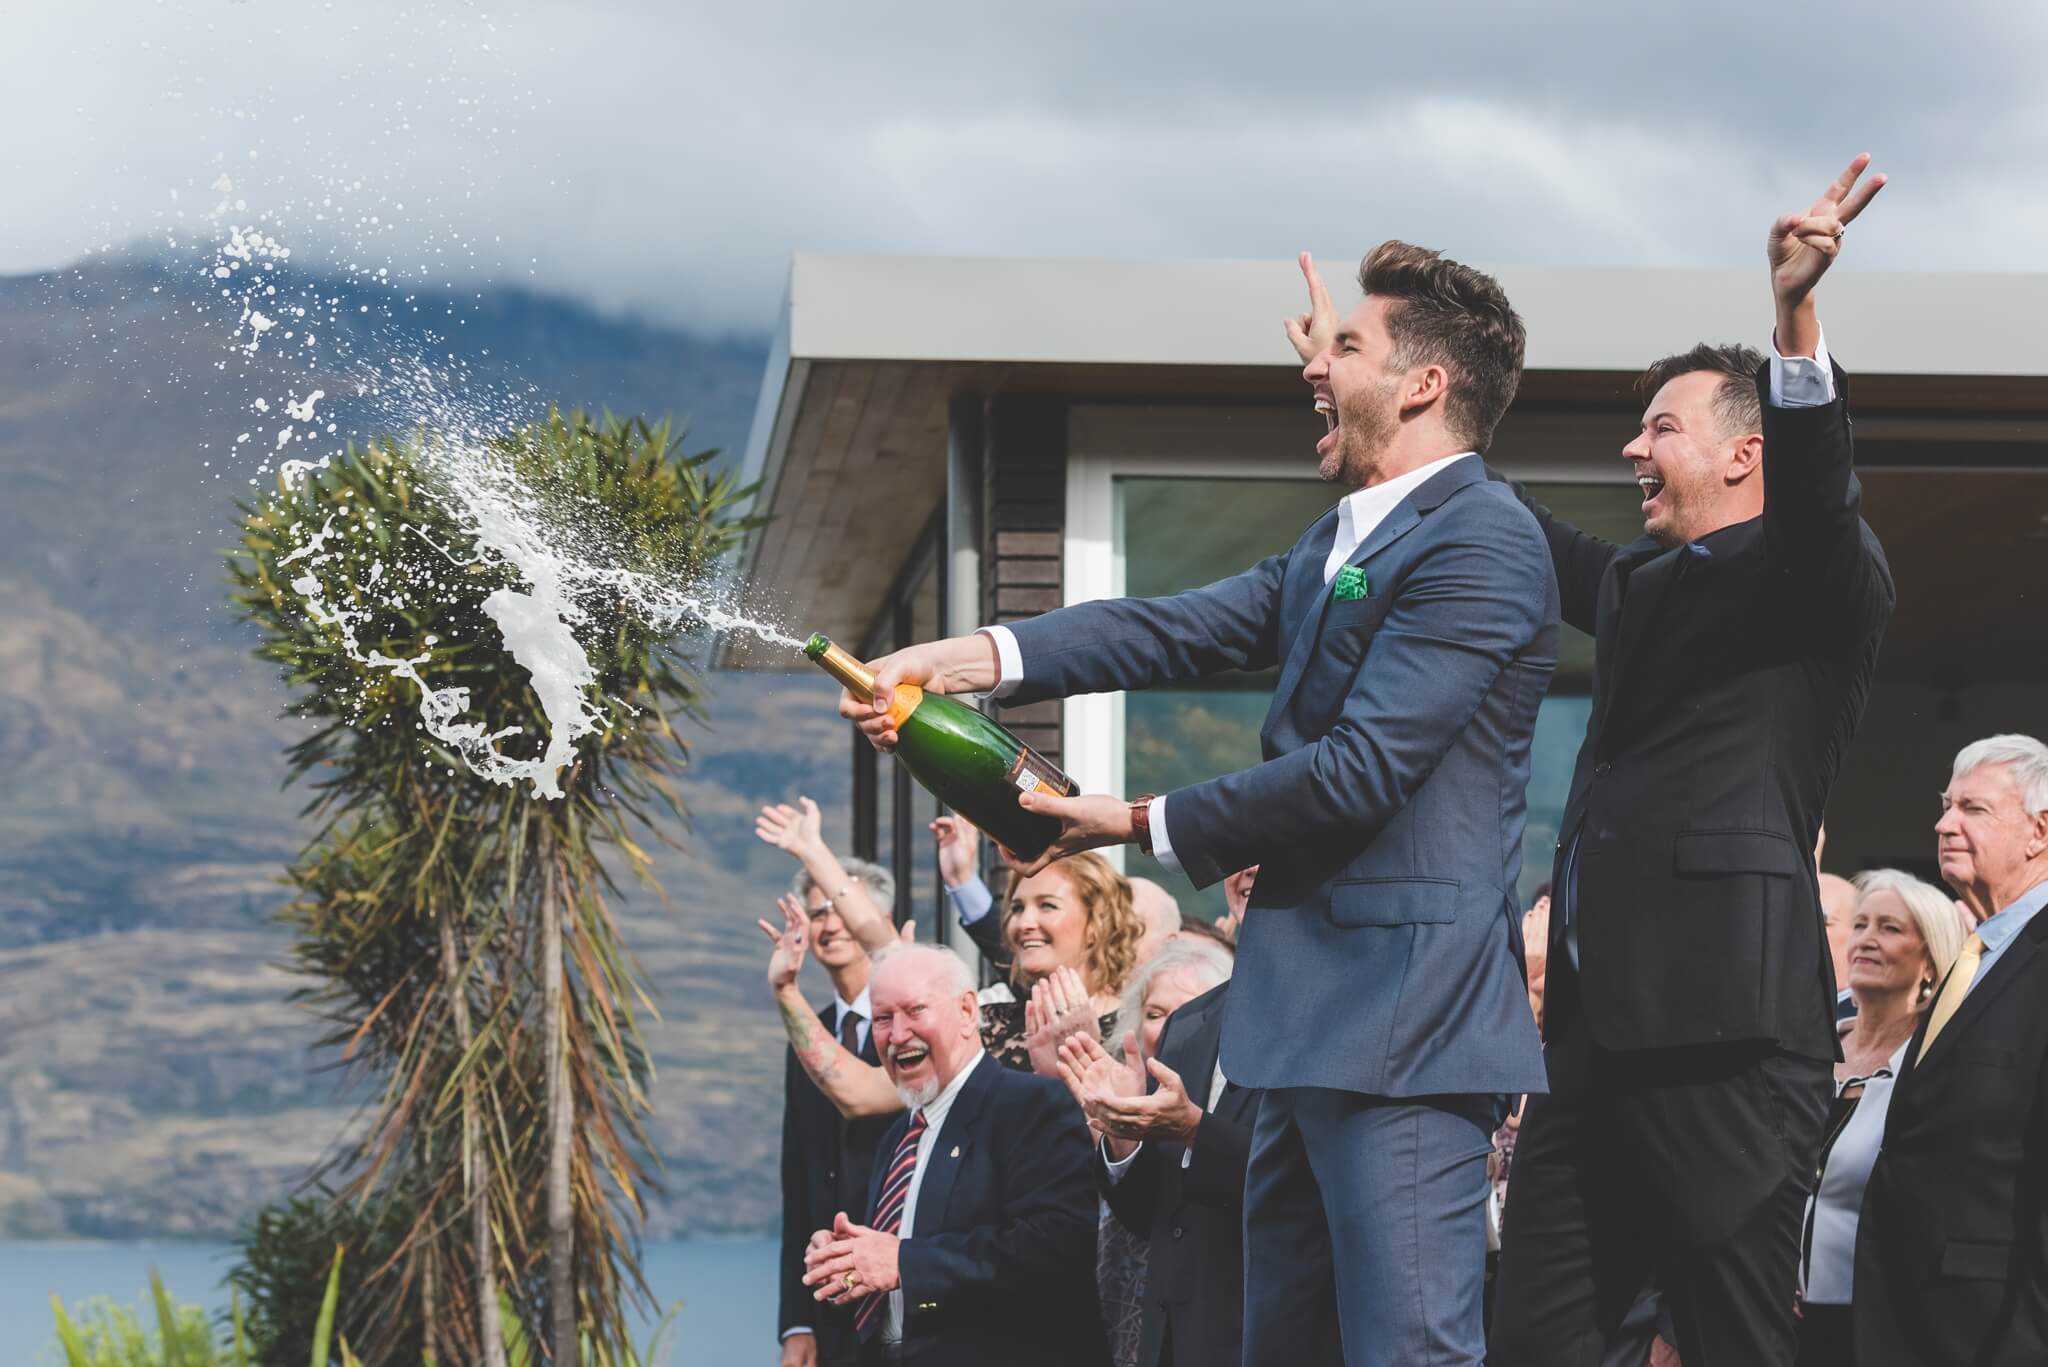 Intimate wedding in Queenstown, New Zealand